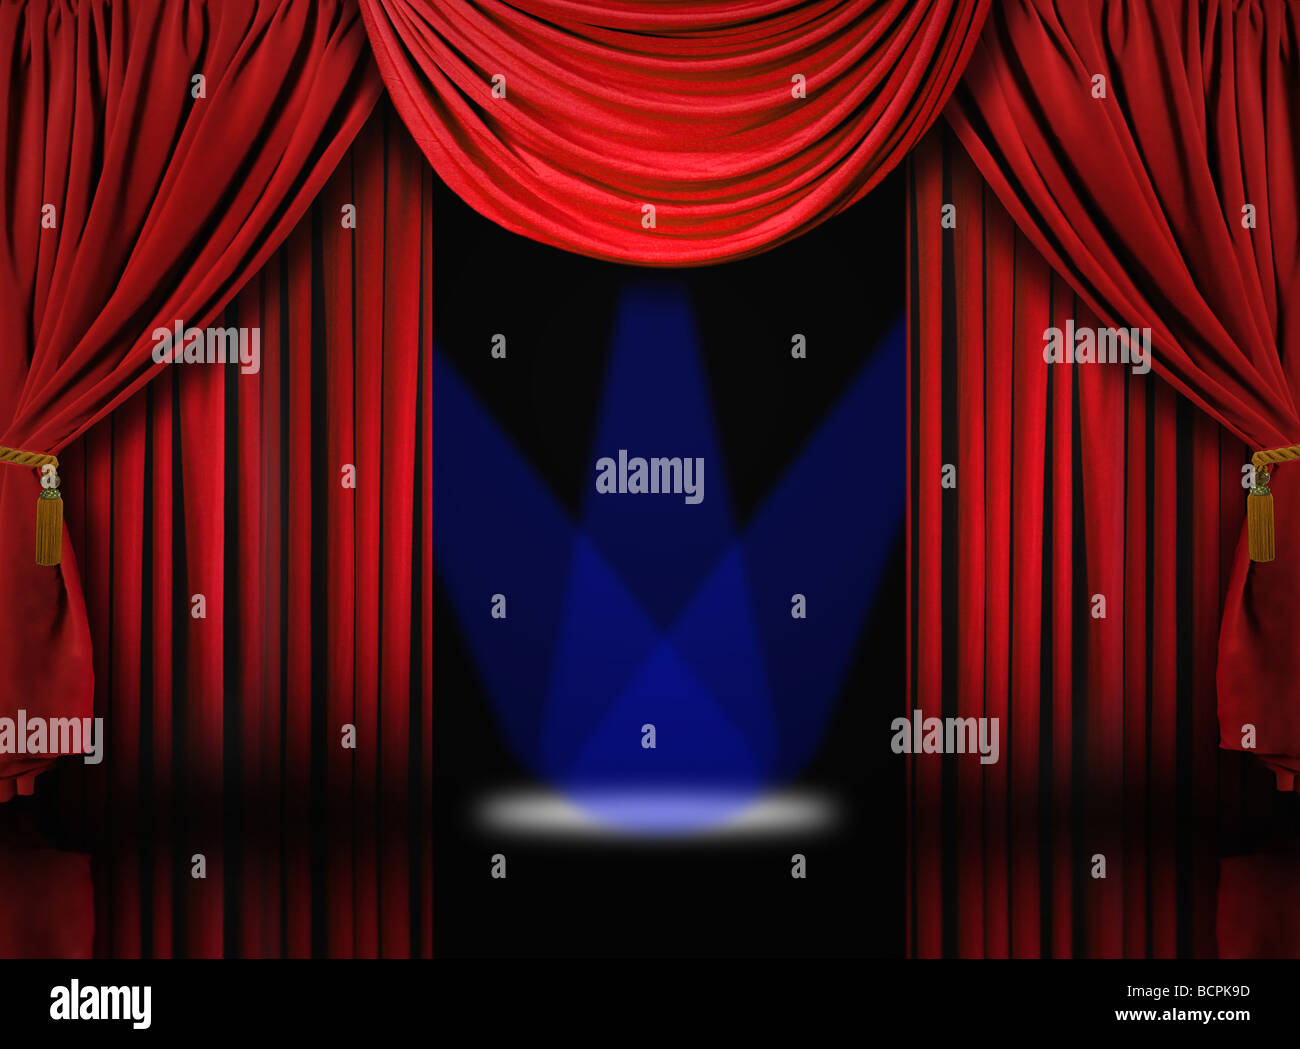 Belle scène de théâtre drapé de velours rouge avec des rideaux projecteurs bleu Banque D'Images